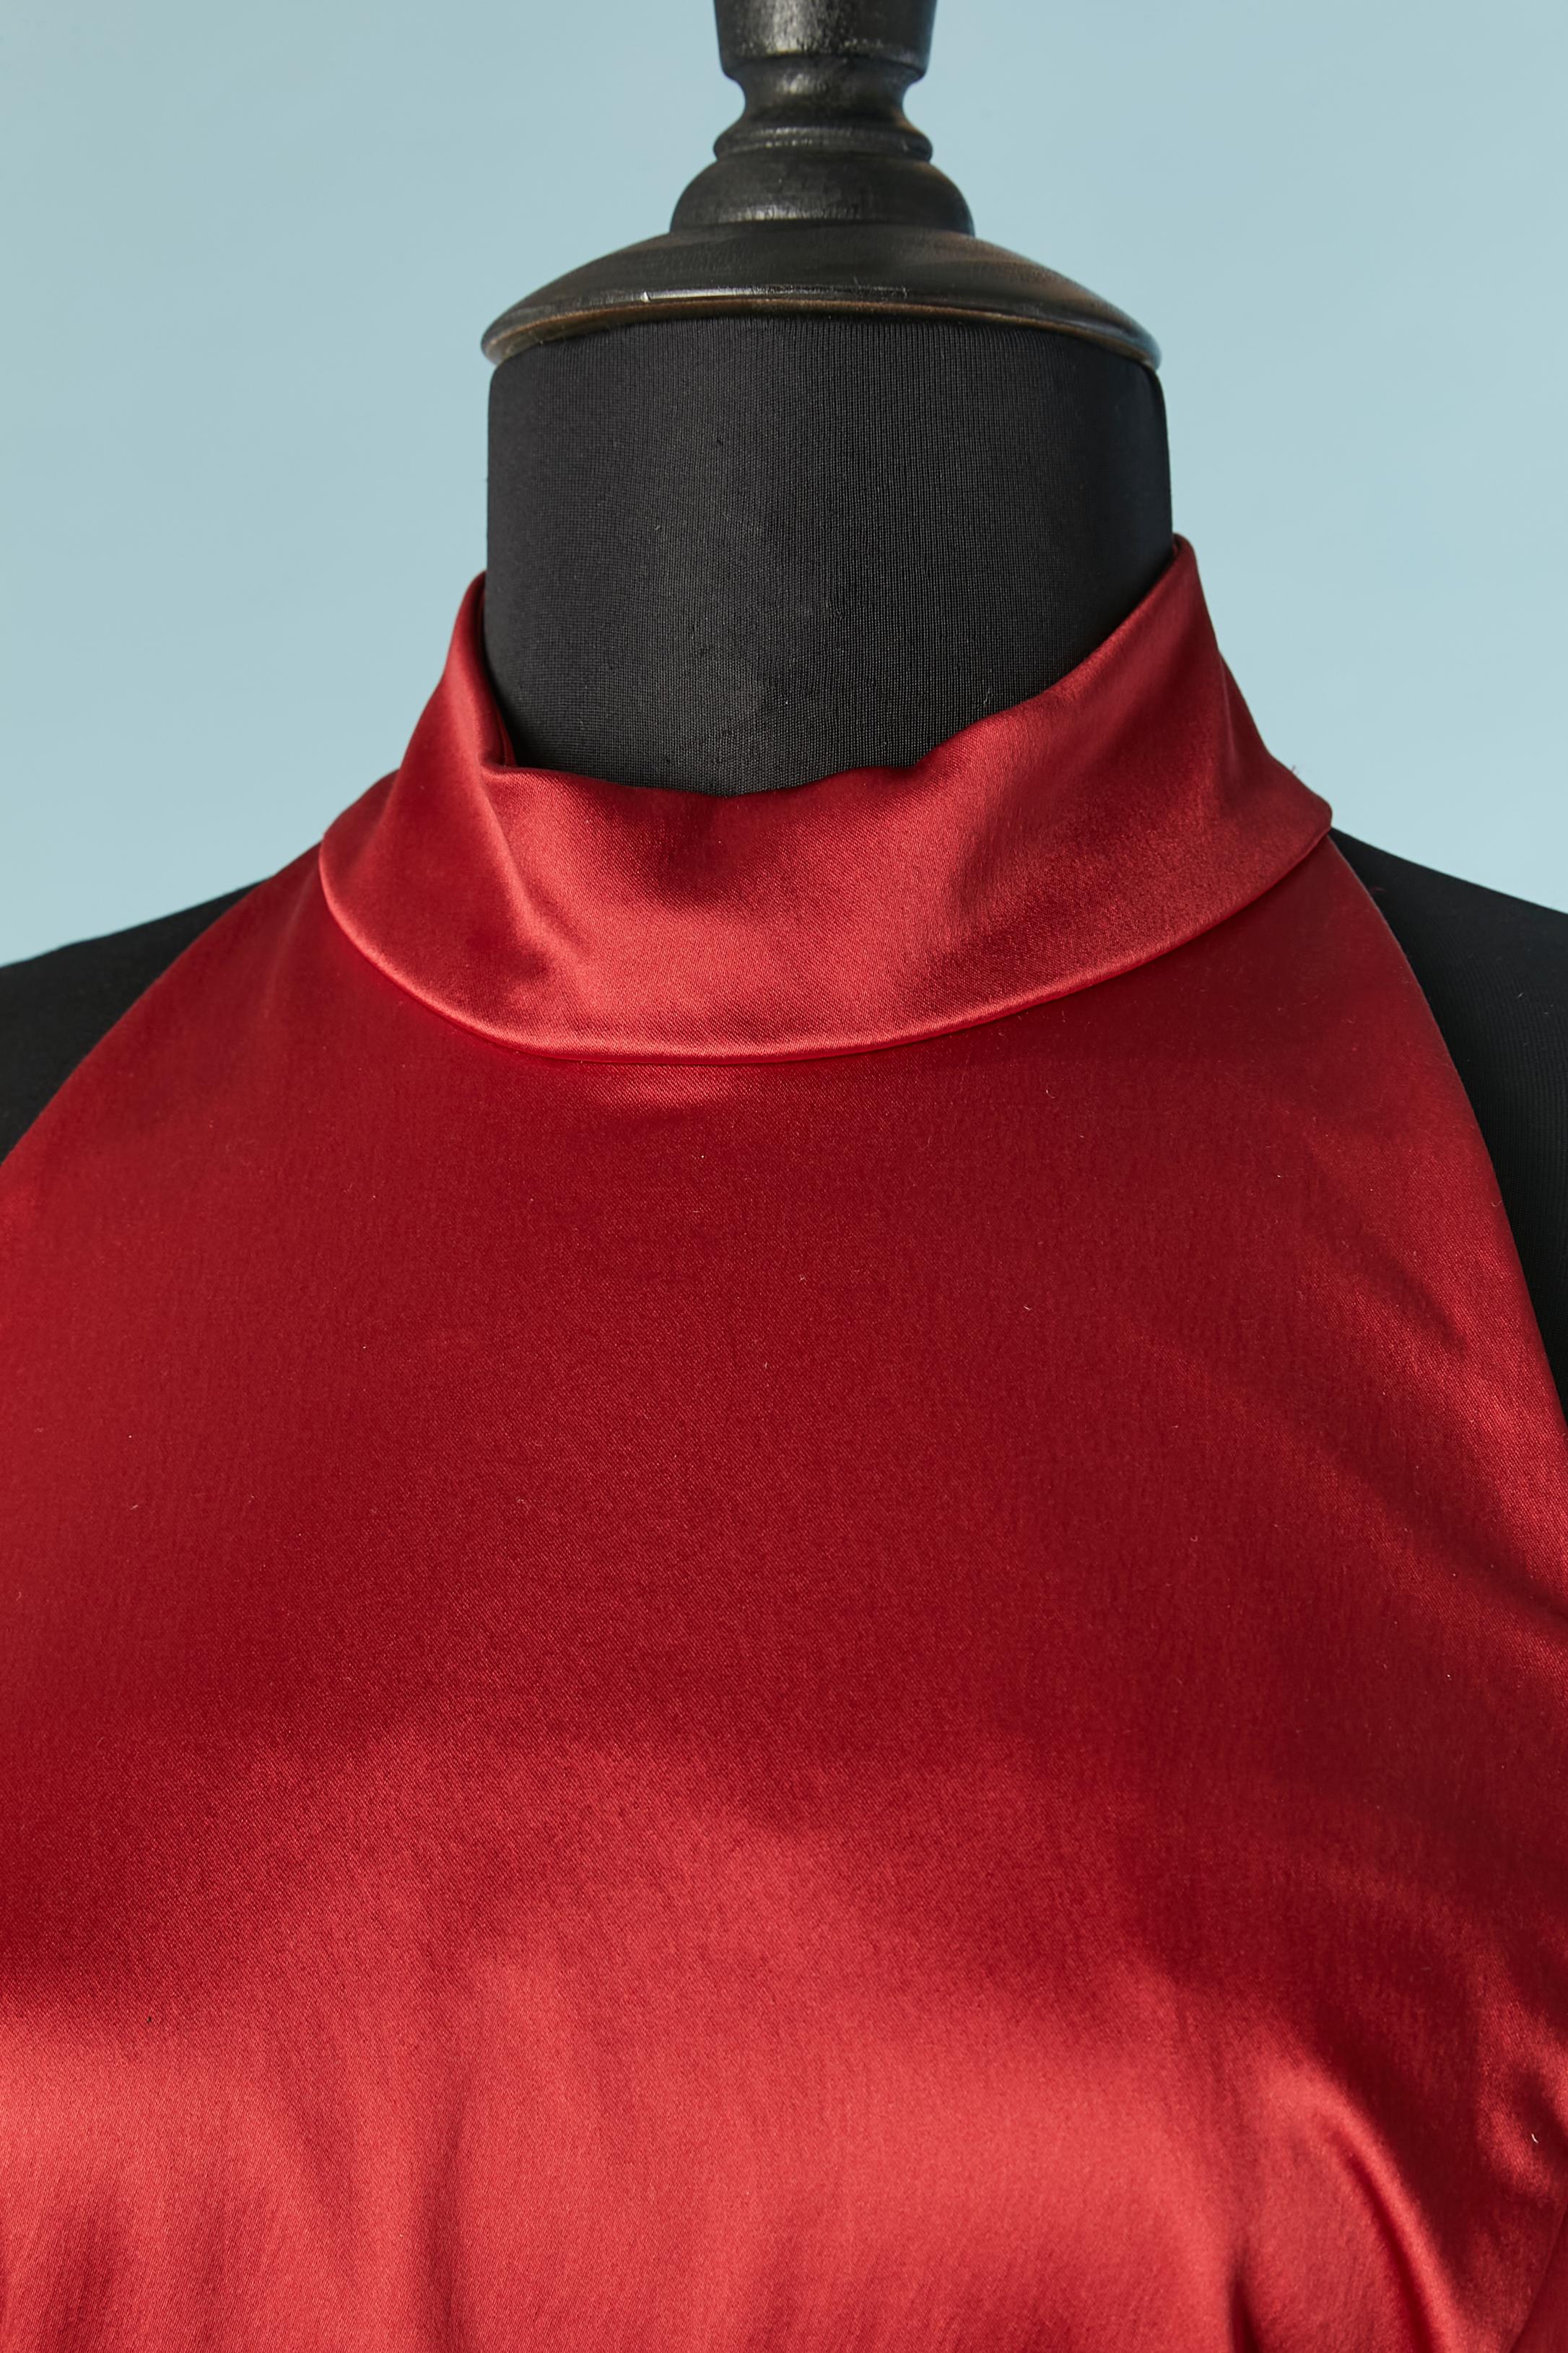 Robe de cocktail extensible en satin rouge avec découpe sur les épaules. Composition du tissu principal : 40% soie, 48% polyester, 12% élasthanne. Doublure probablement en polyester. 
Fermeture à glissière invisible et crochet au milieu du dos. Zip